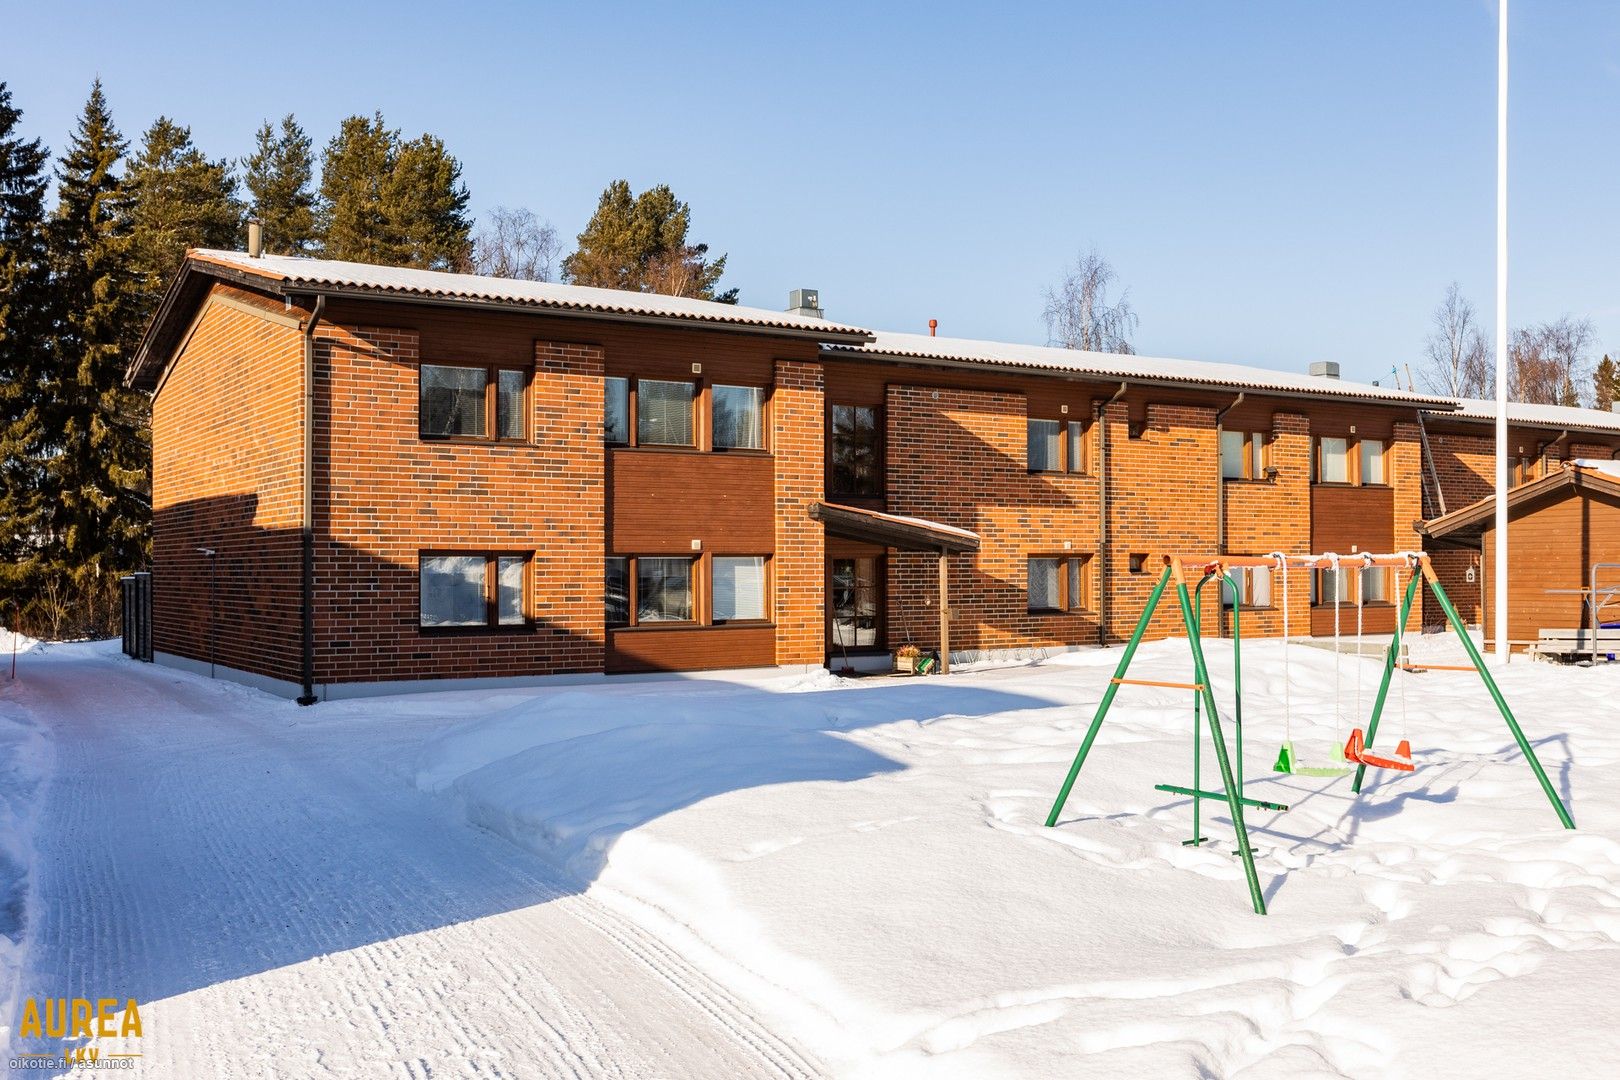 75 m² Huvipolku 1 A, 90830 Oulu 3h, k, s – Oikotie 17167027 – SKVL